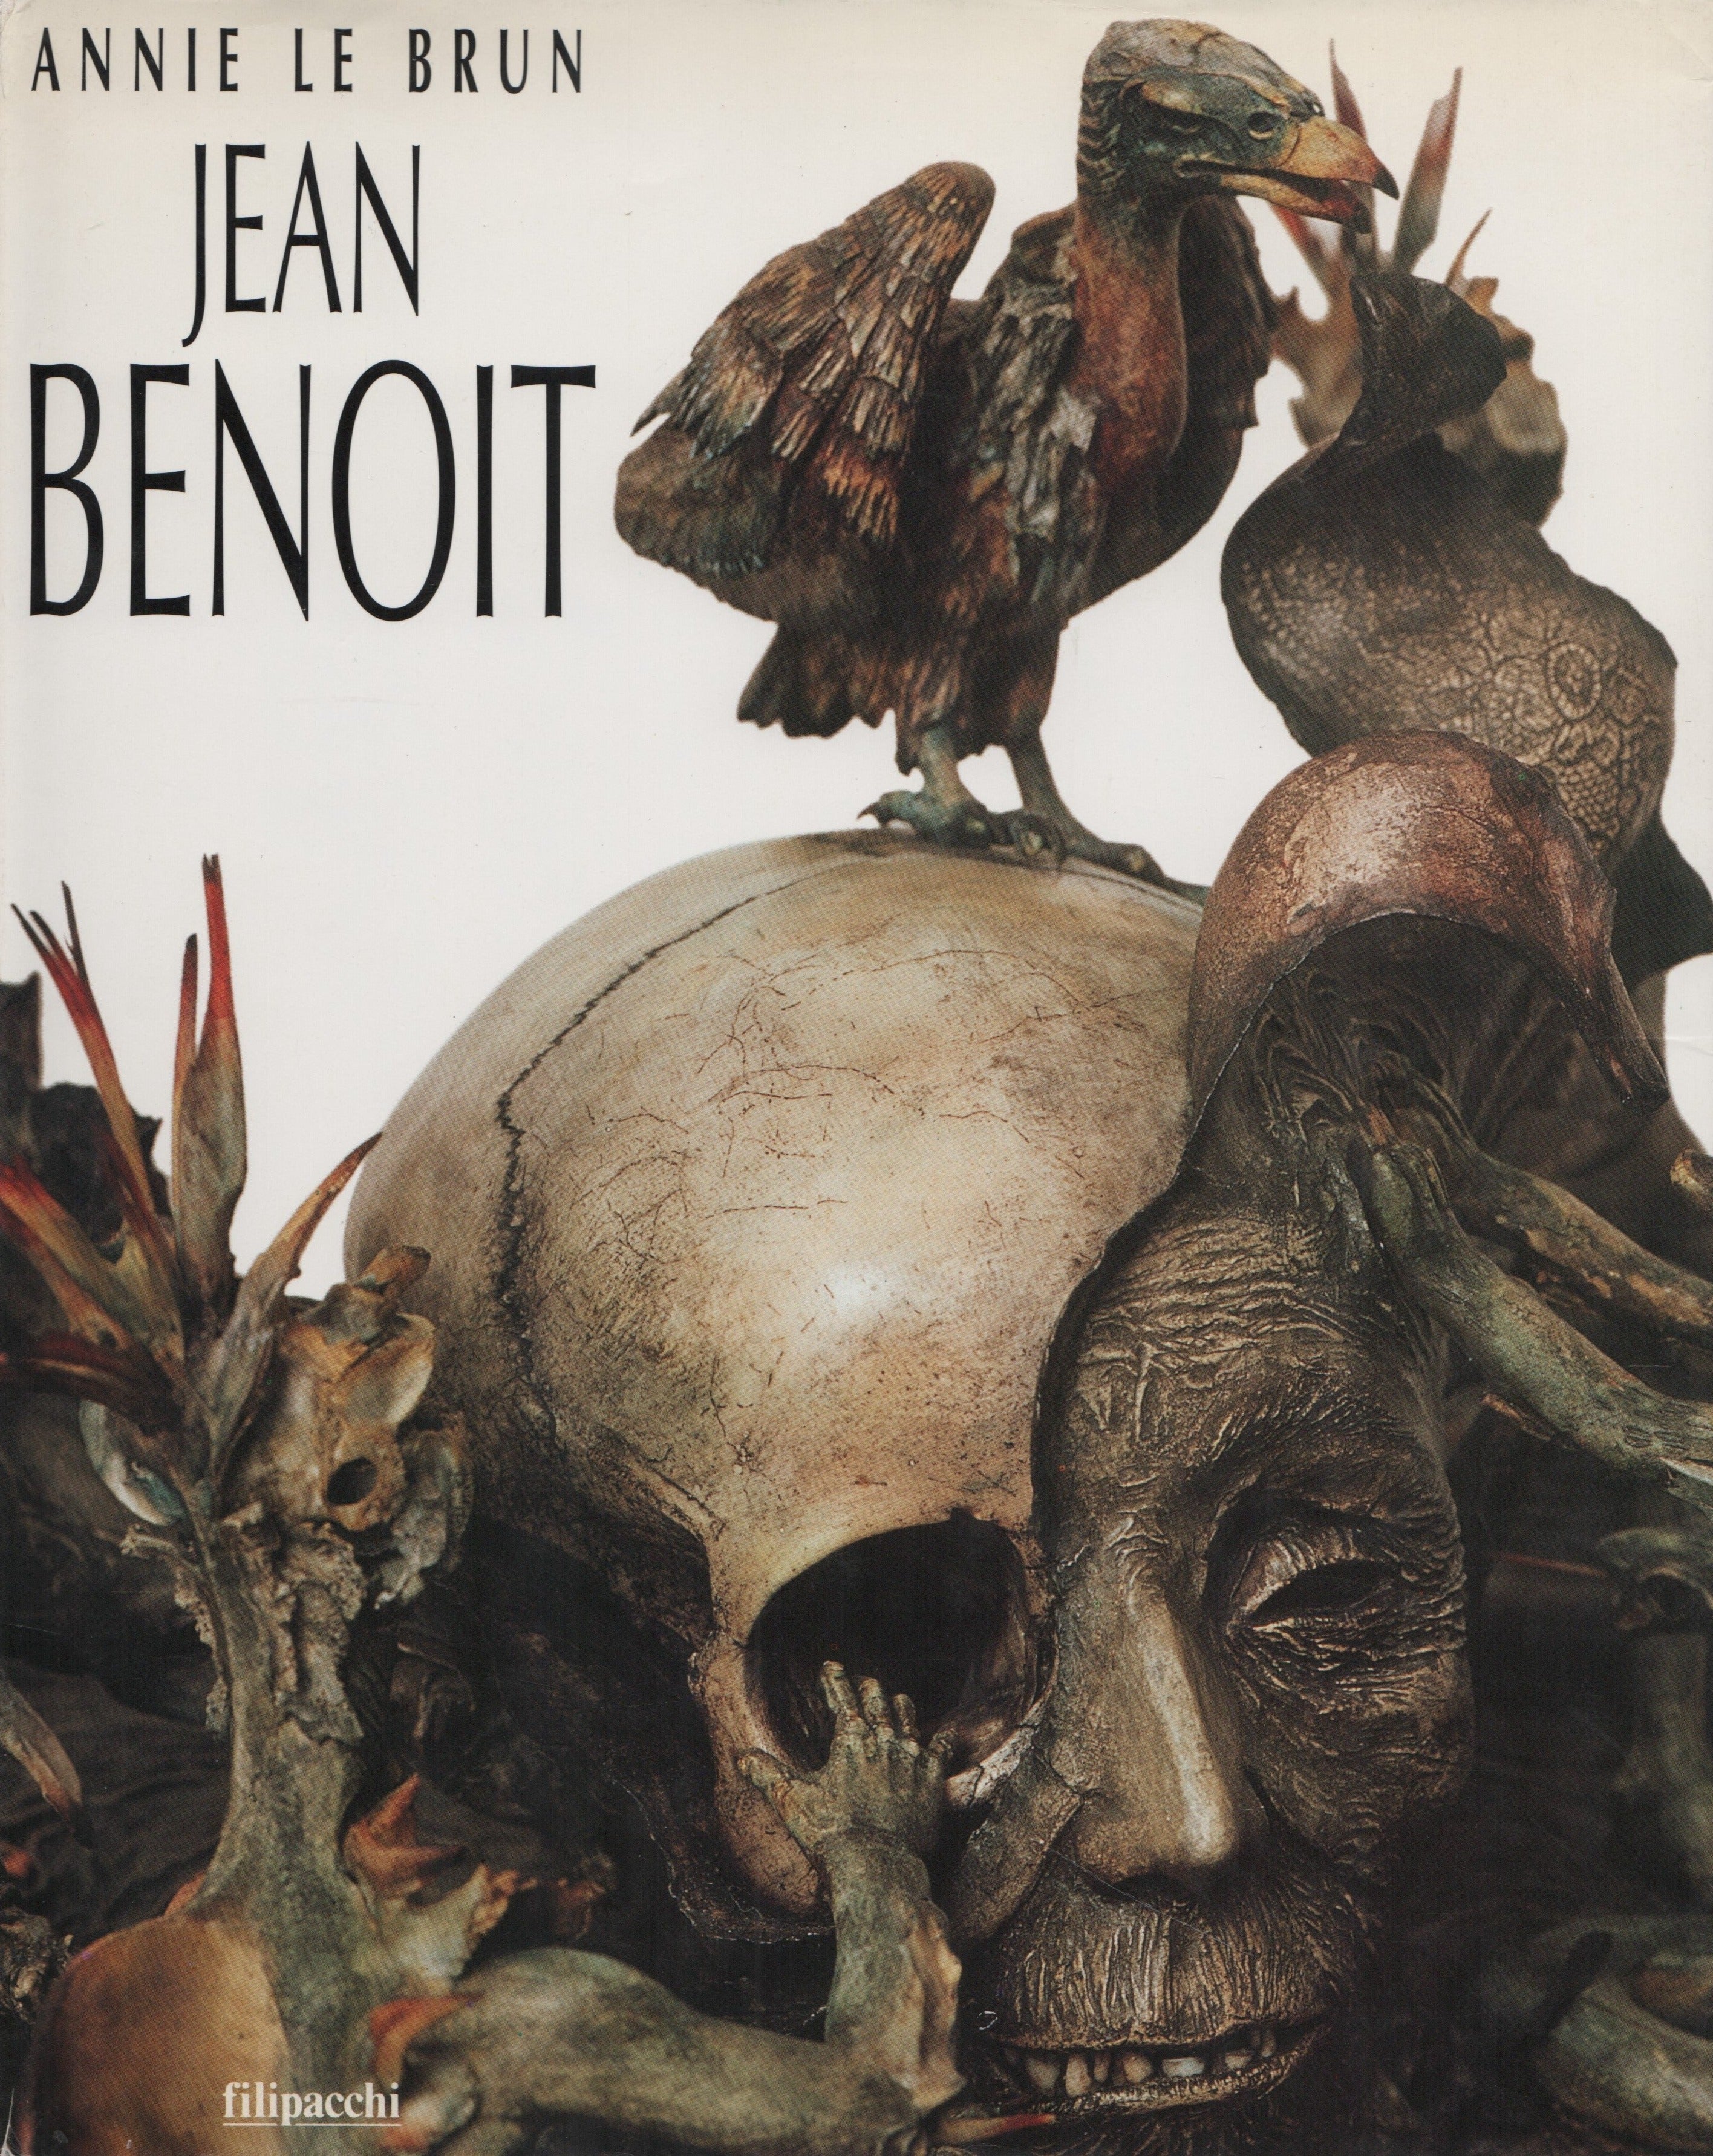 BENOIT, JEAN. Jean Benoit